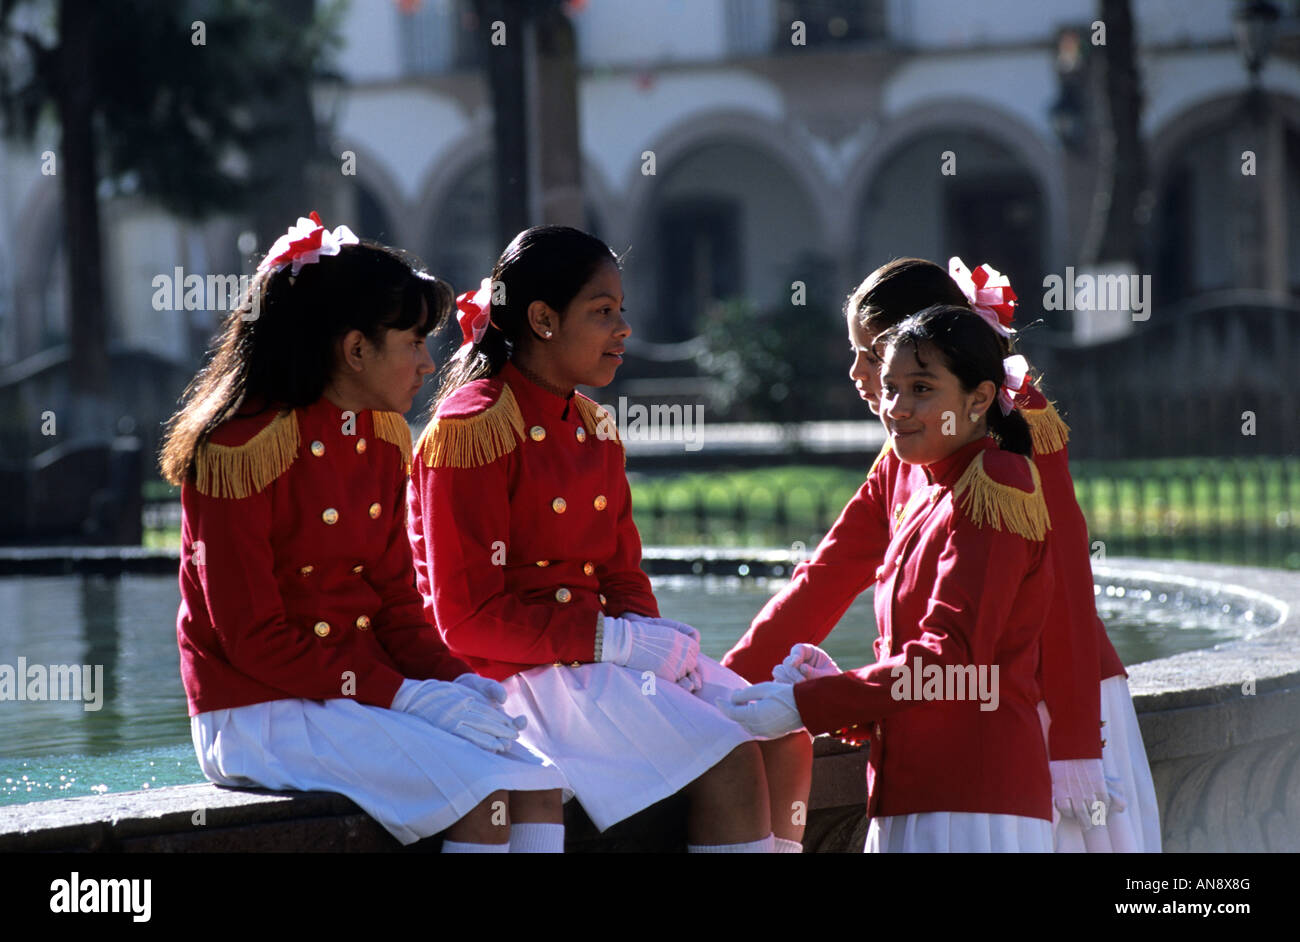 Jeunes filles d'école en uniforme sur la Plaza Grande, Patzcuaro, Michoacan, Mexique Banque D'Images